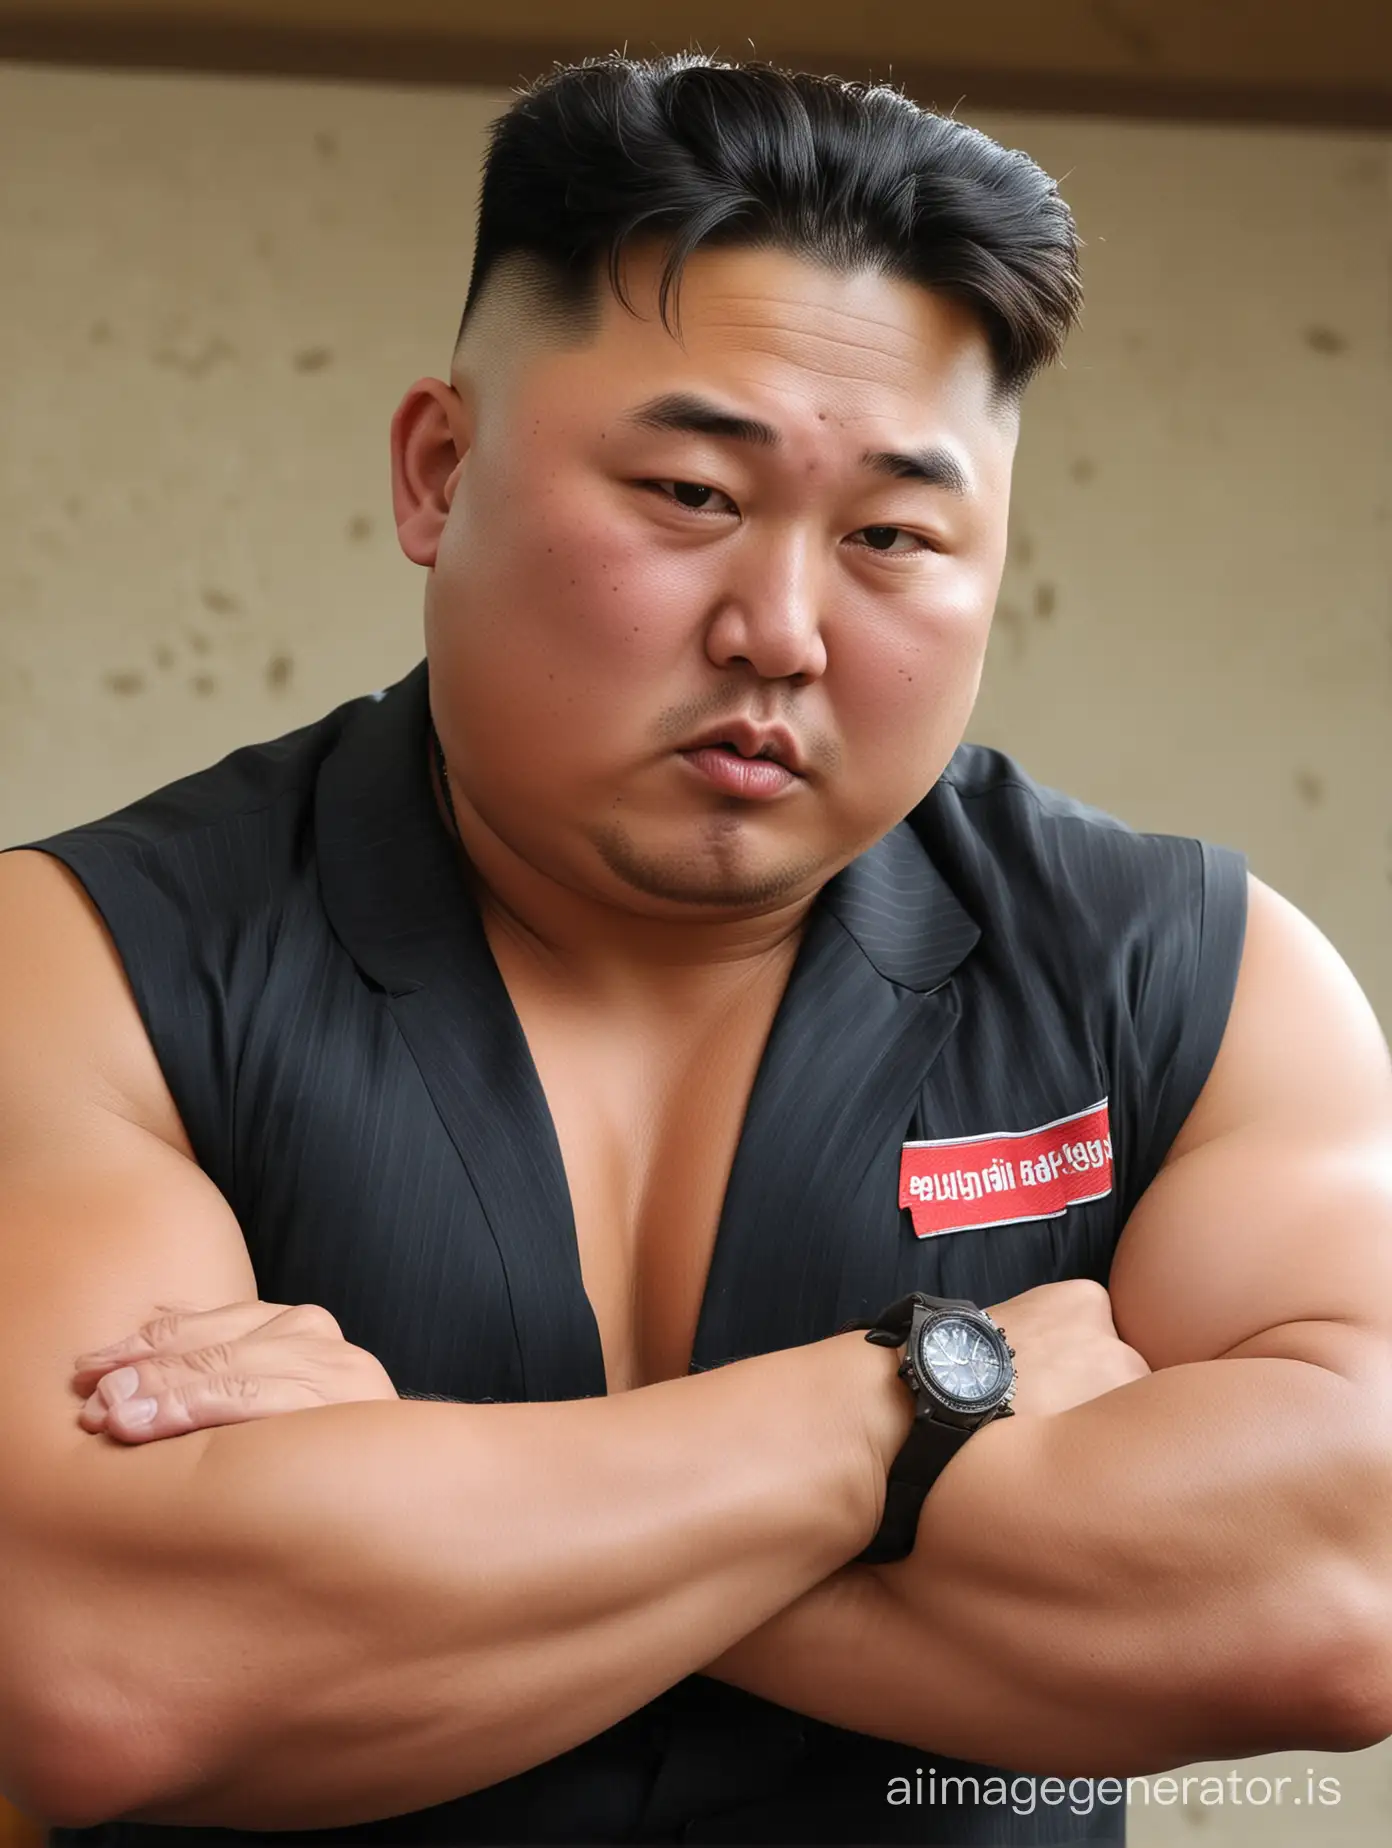 Kim-Jong-Un-Bodybuilder-Checking-Time